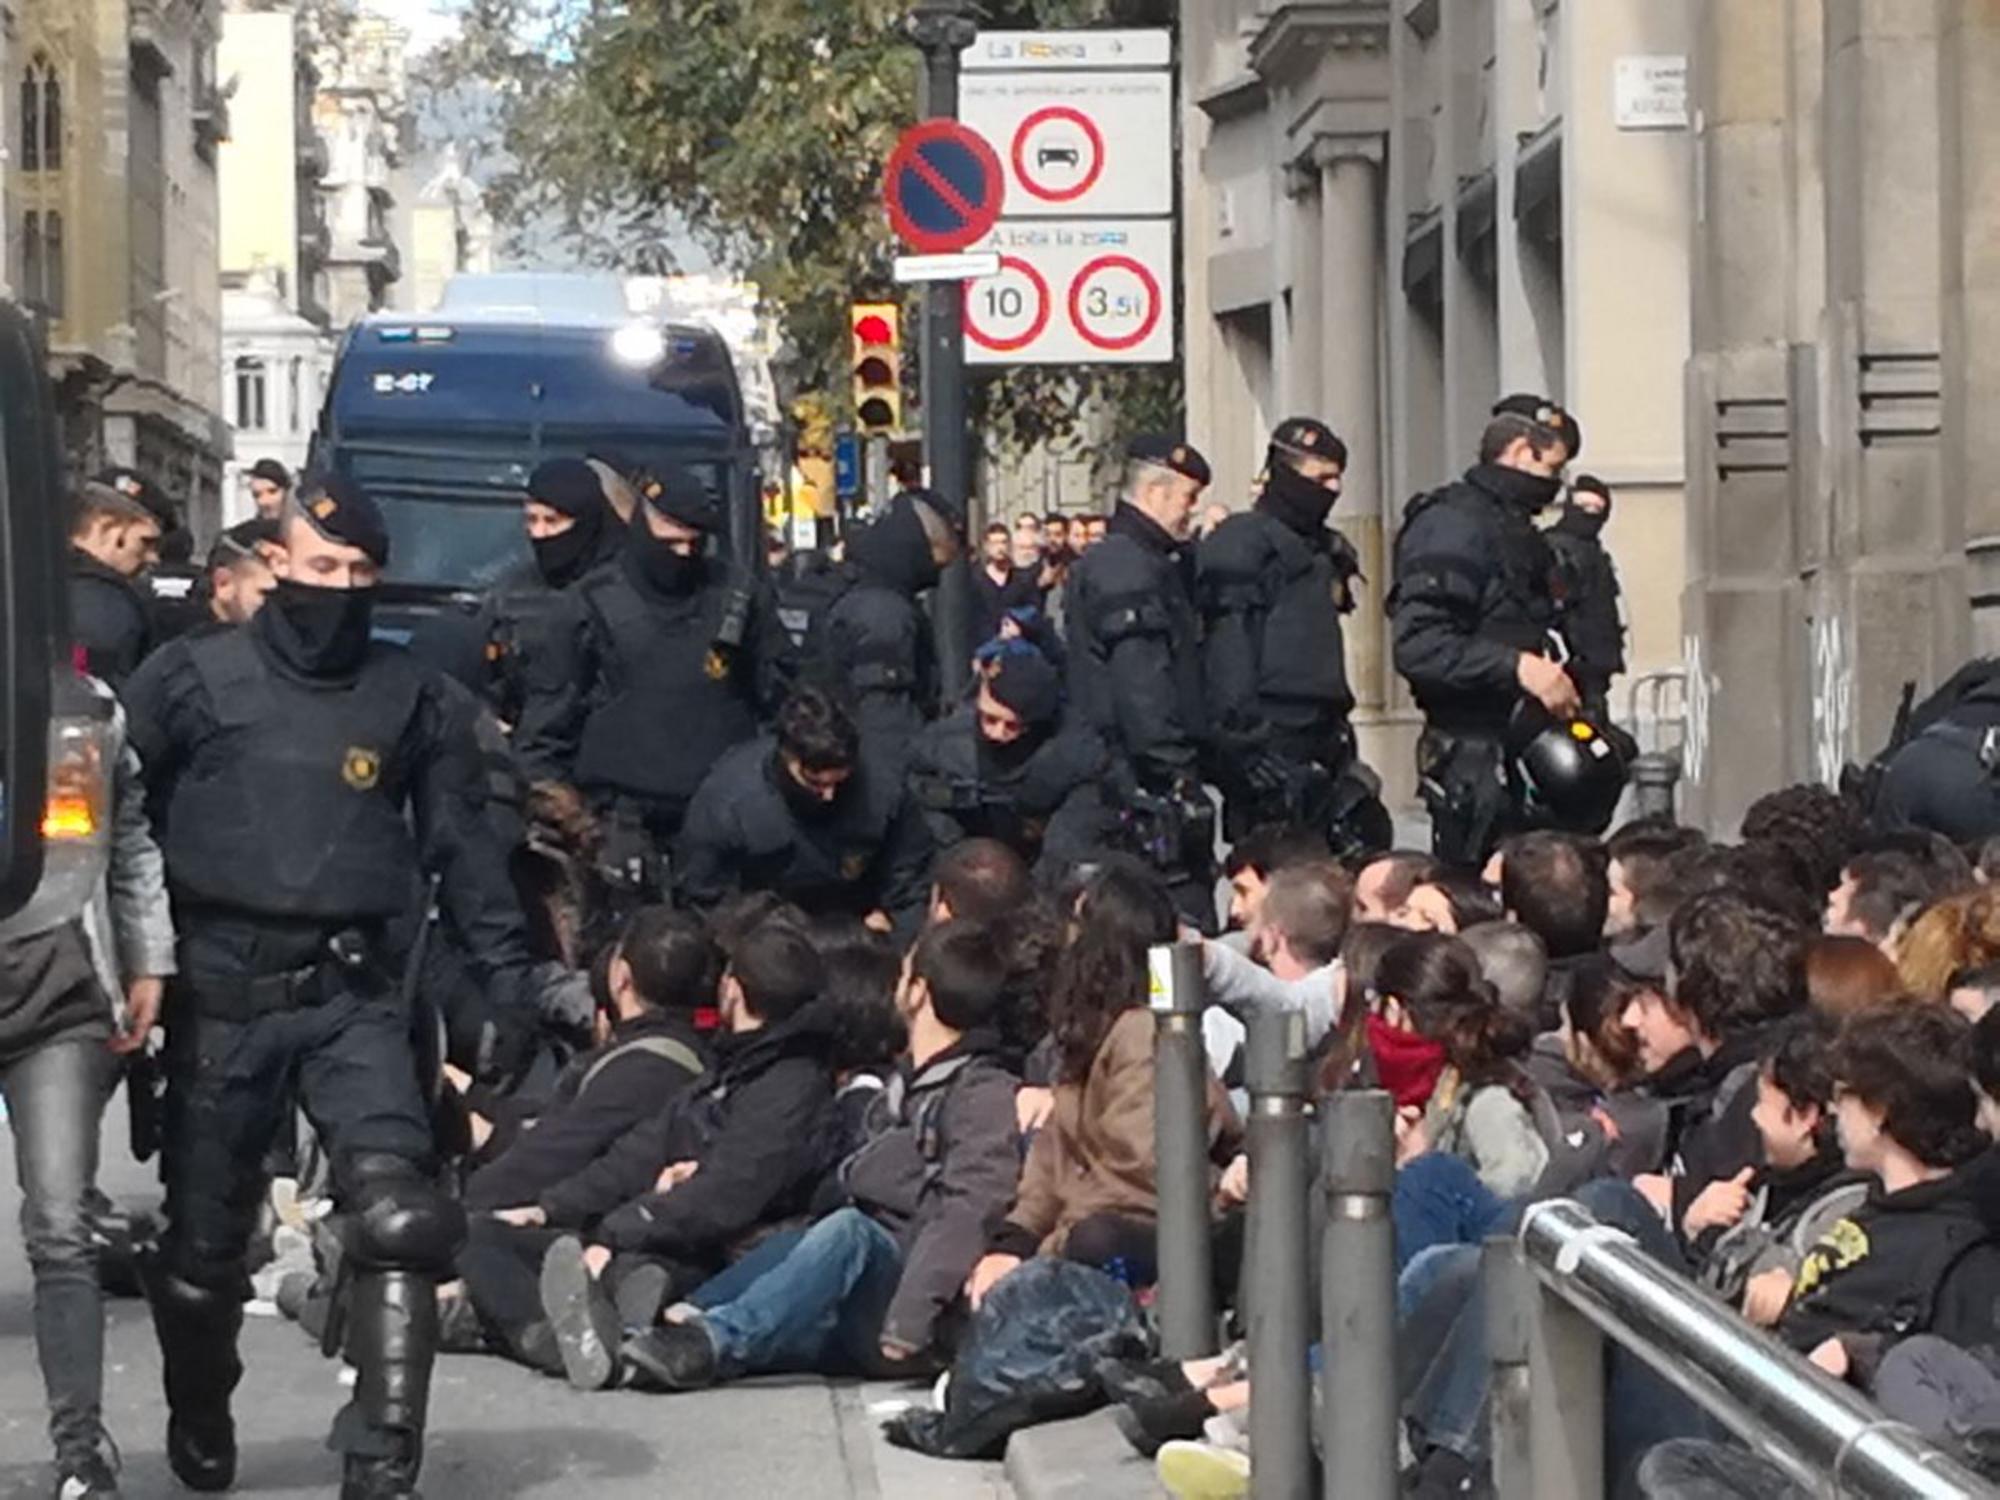 Los Mossos desalojan la protesta que había cortado el tráfico en la Via Laietana de Barcelona